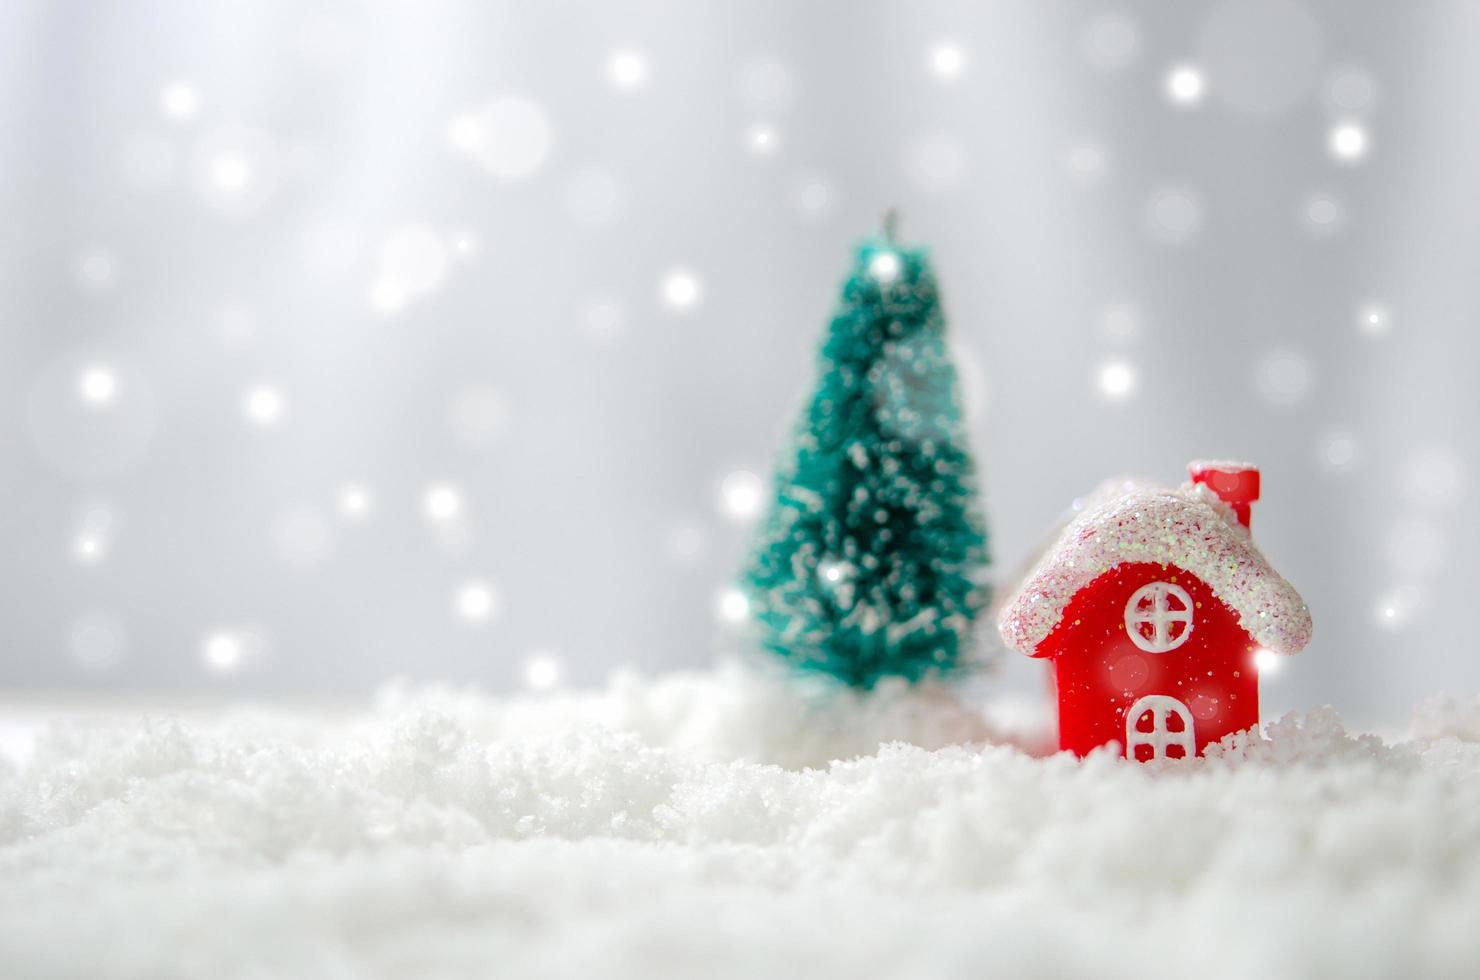 Casa ed en miniatura y árbol de navidad en la nieve. foto